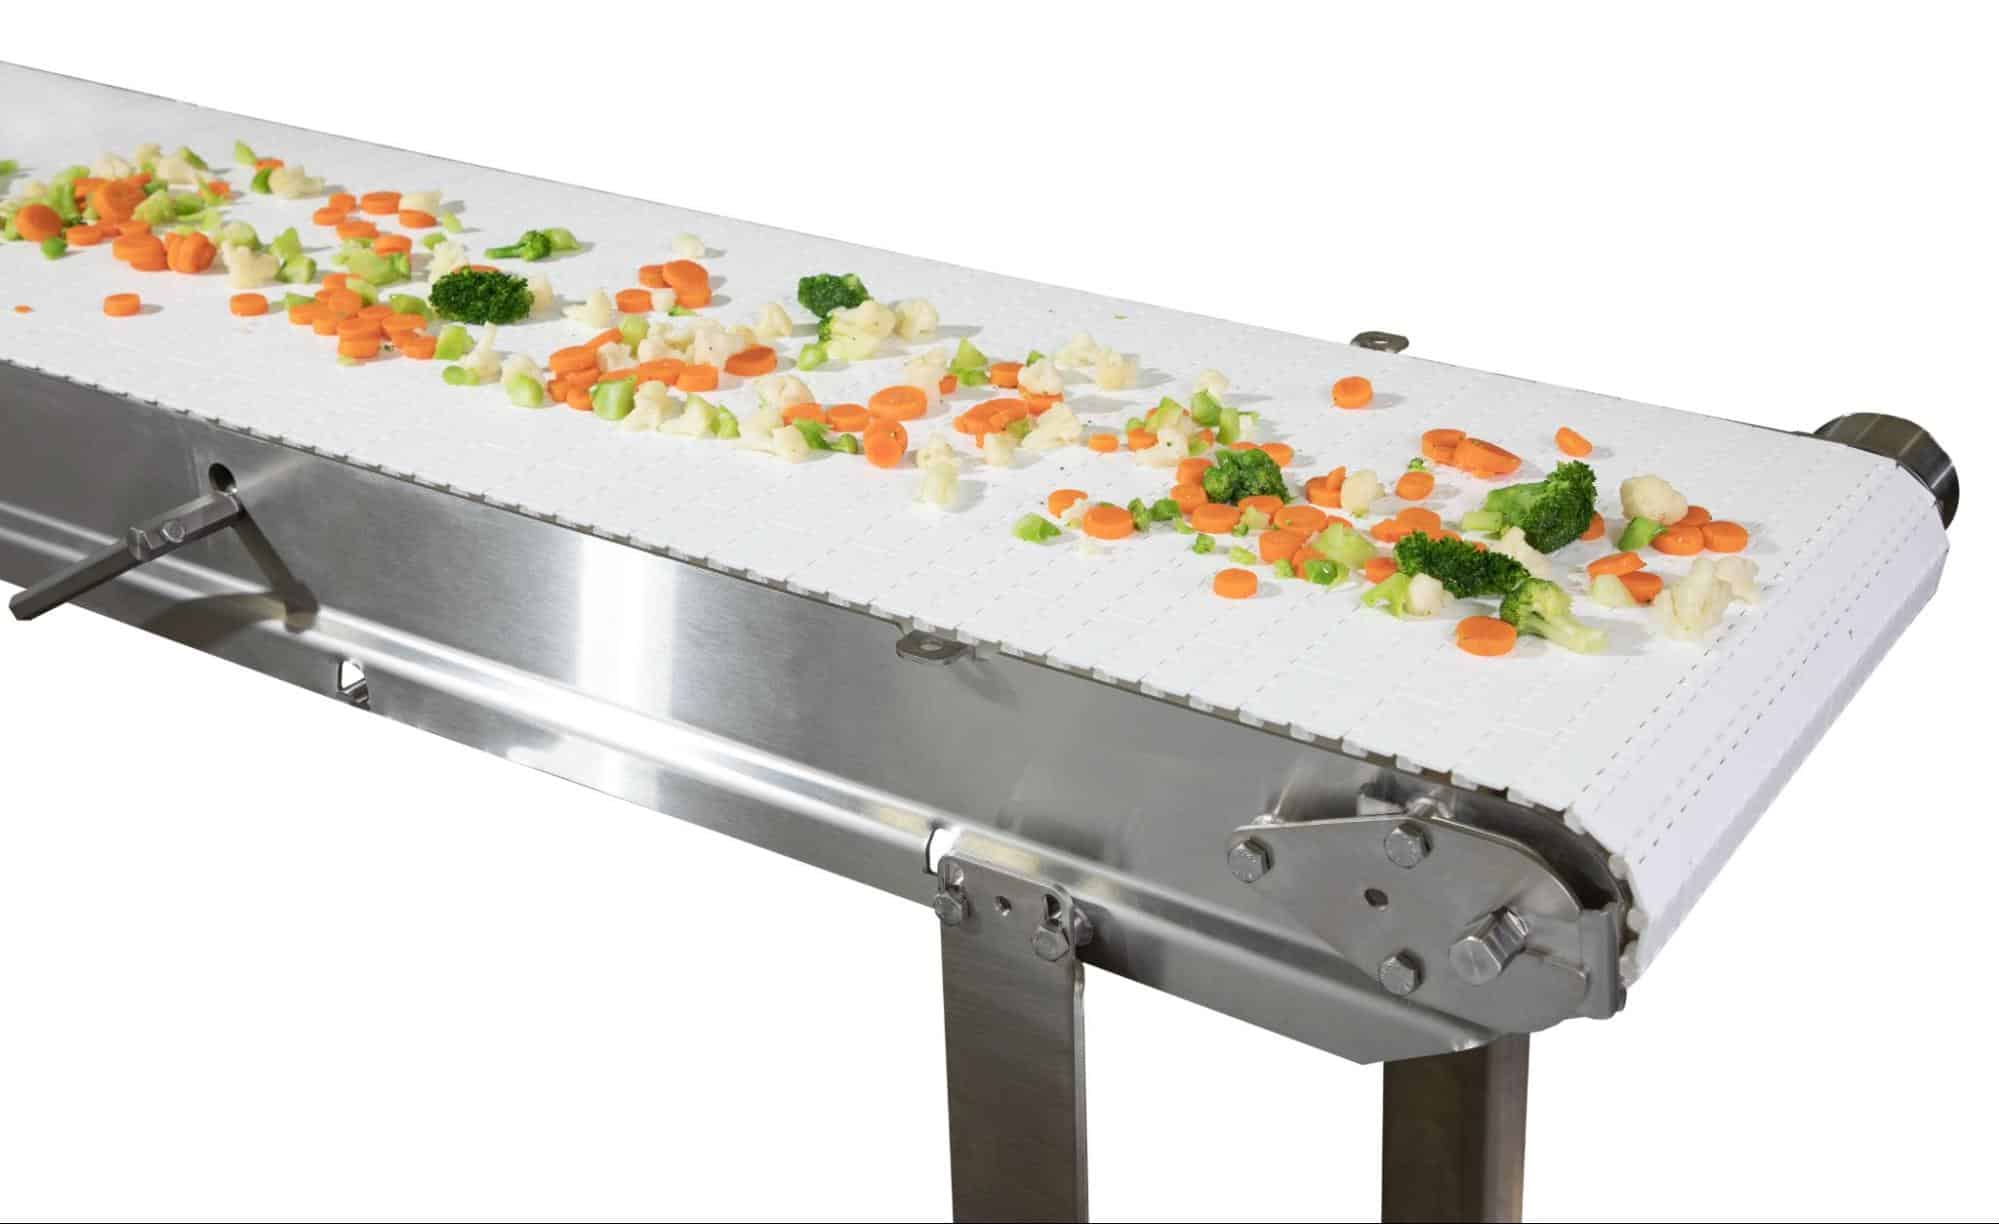 A Dorner AquaPruf conveyor transports vegetables.